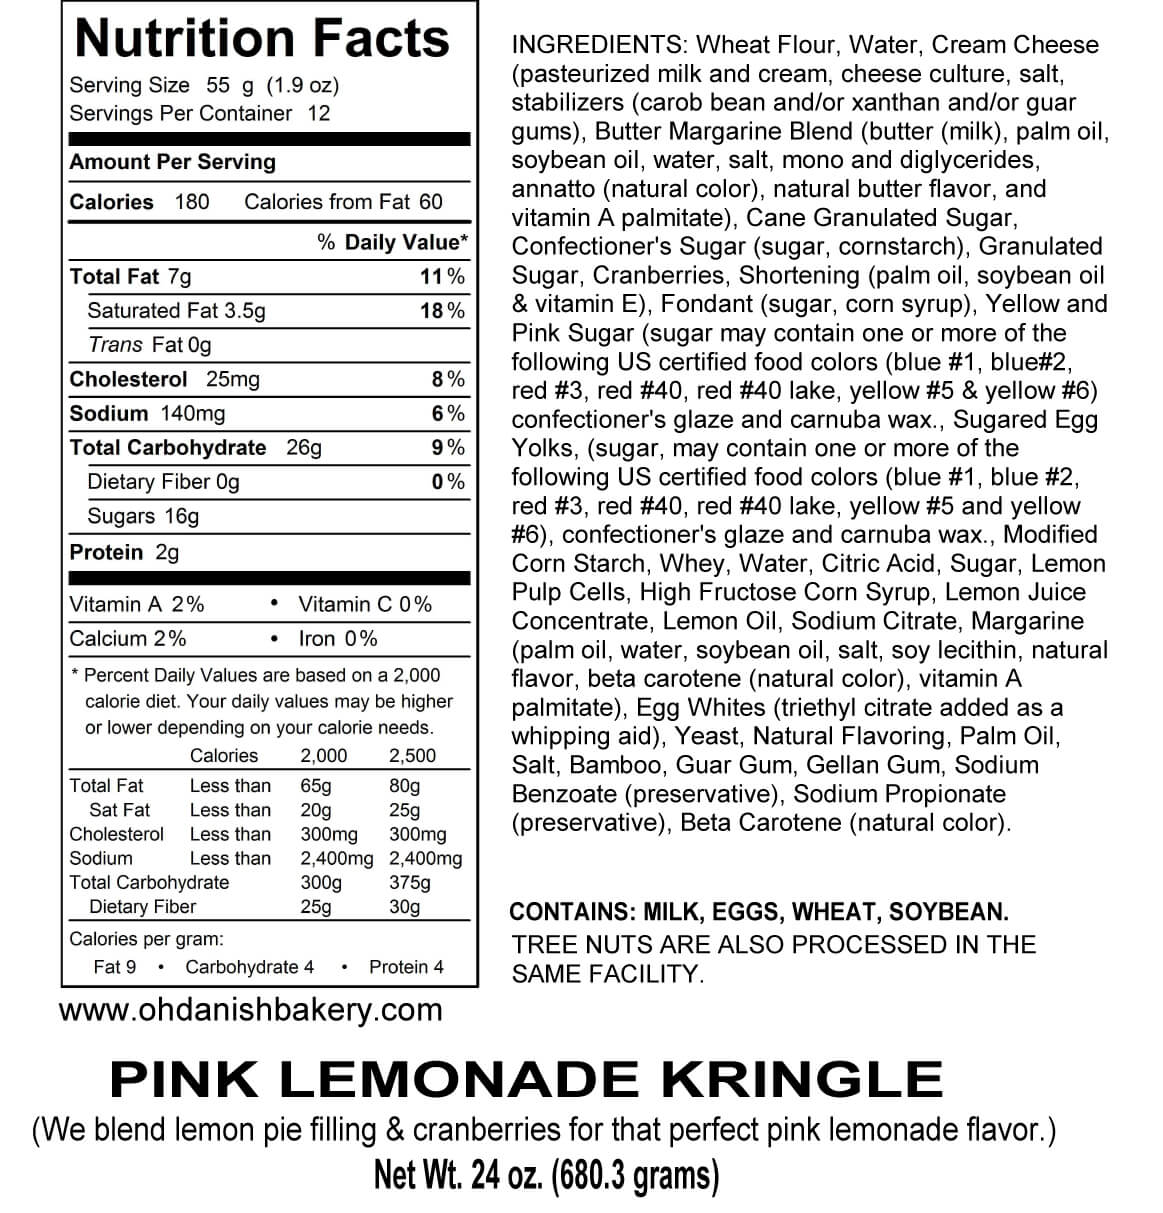 Nutritional Label for Pink Lemonade Kringle